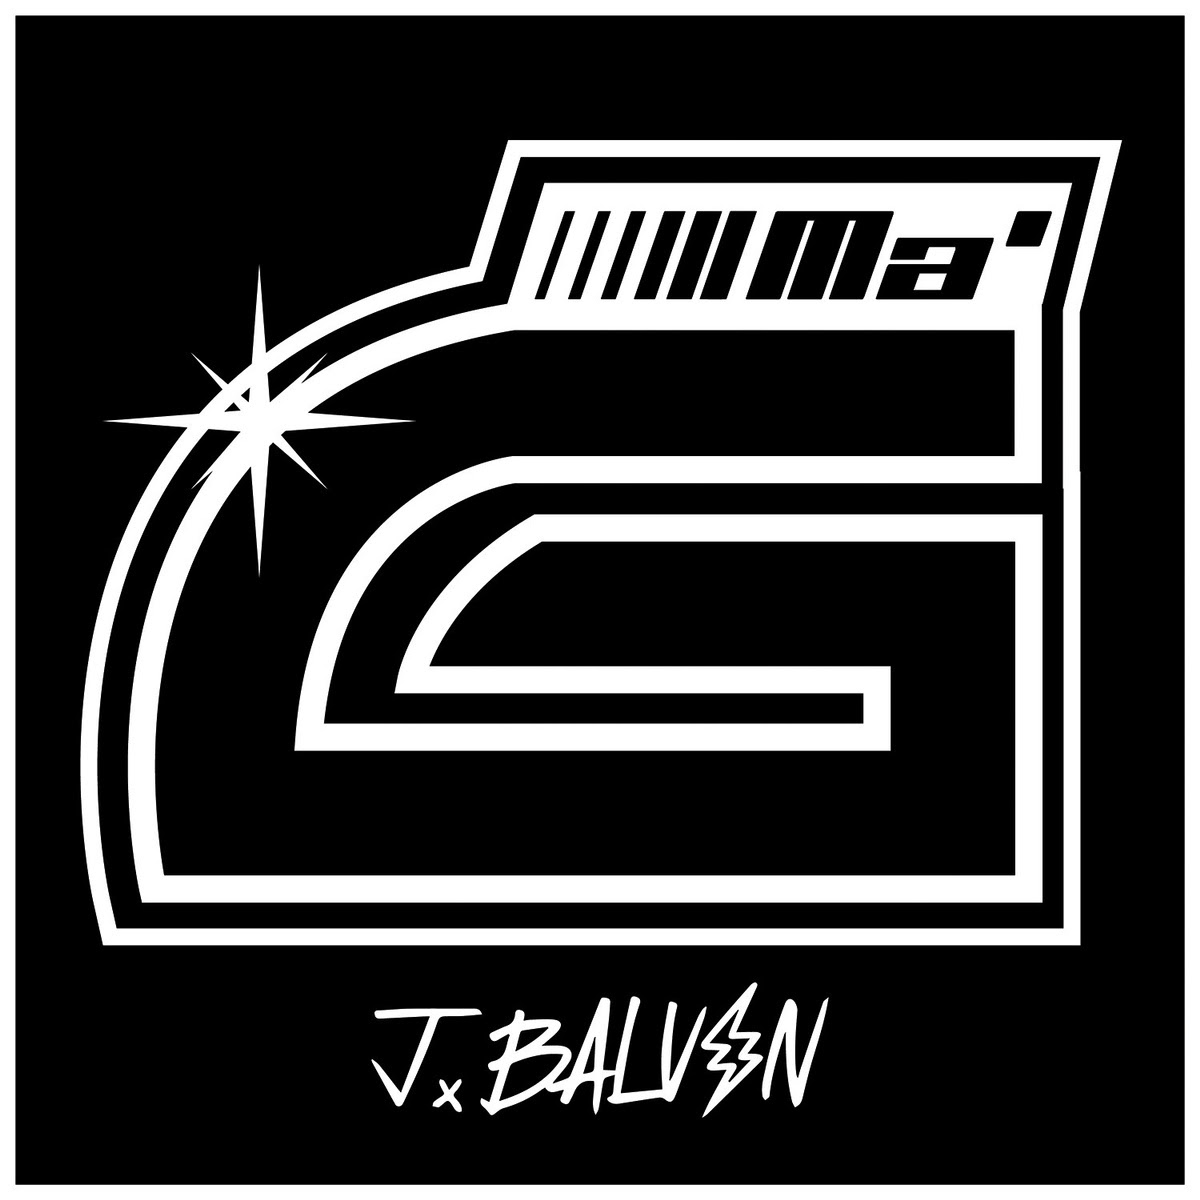 J Balvin lanza sencillo y video de su próximo Álbum